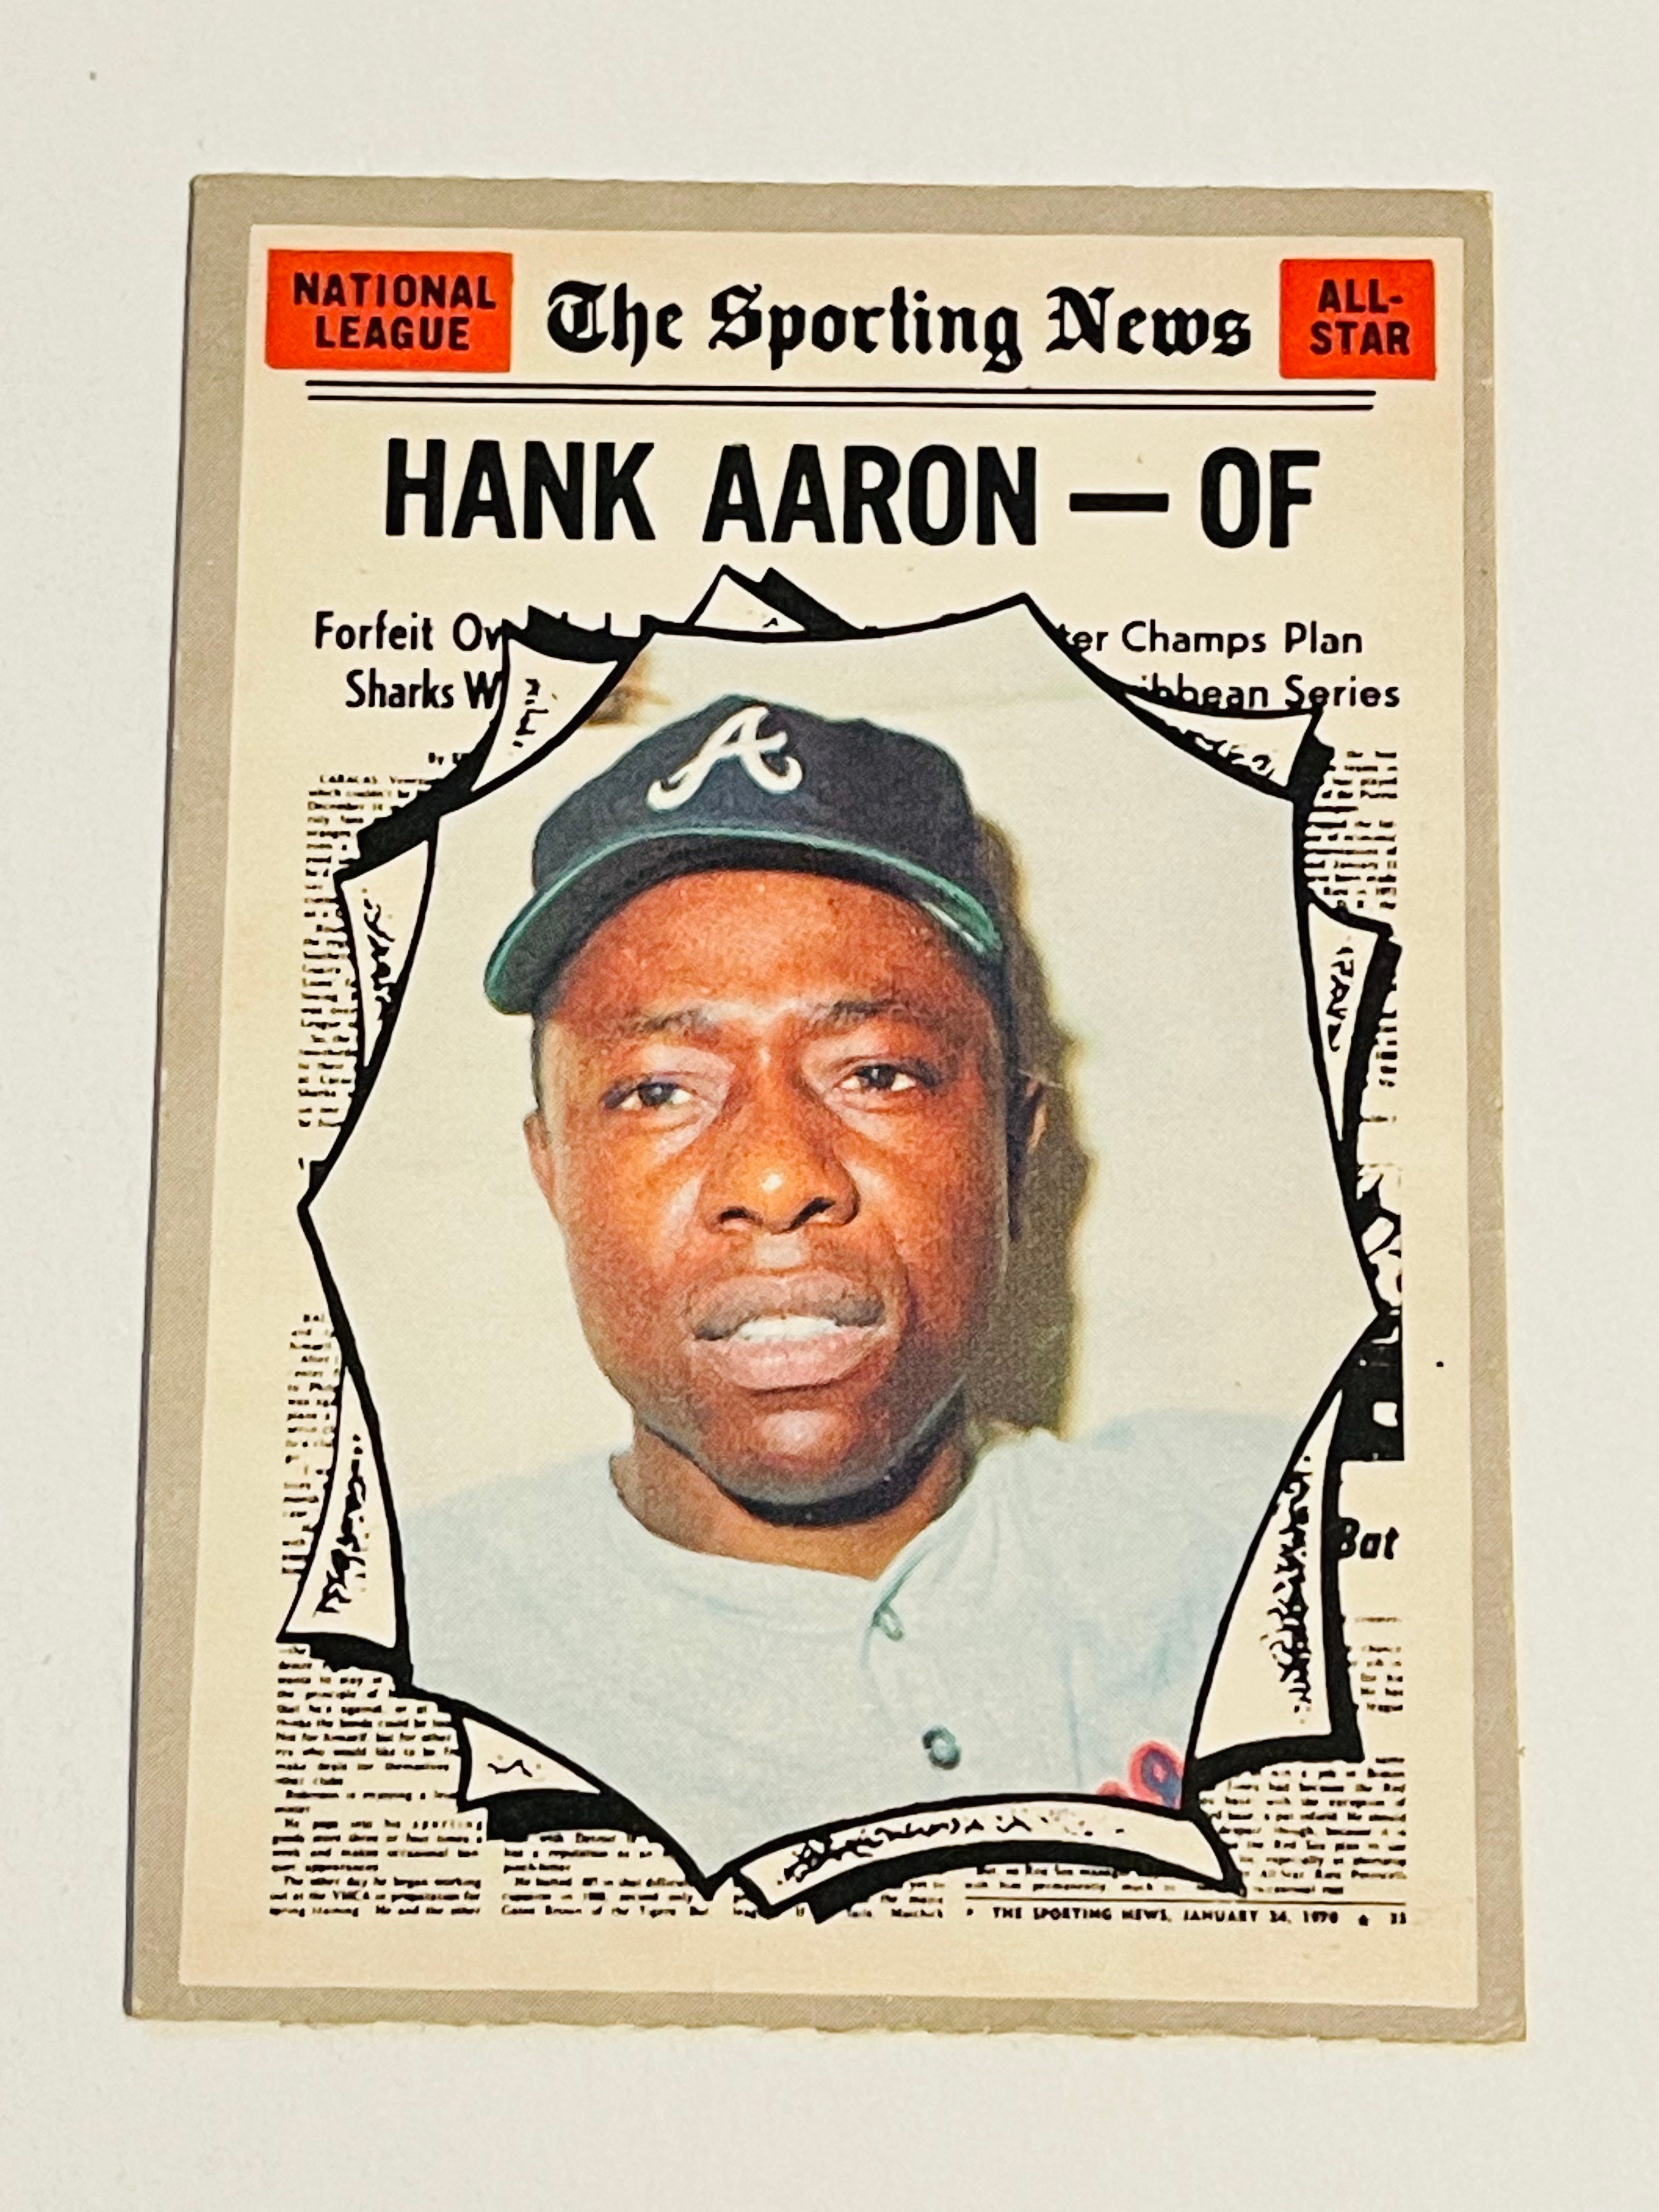 Hank Aaron Opc rare high grade baseball card 1970